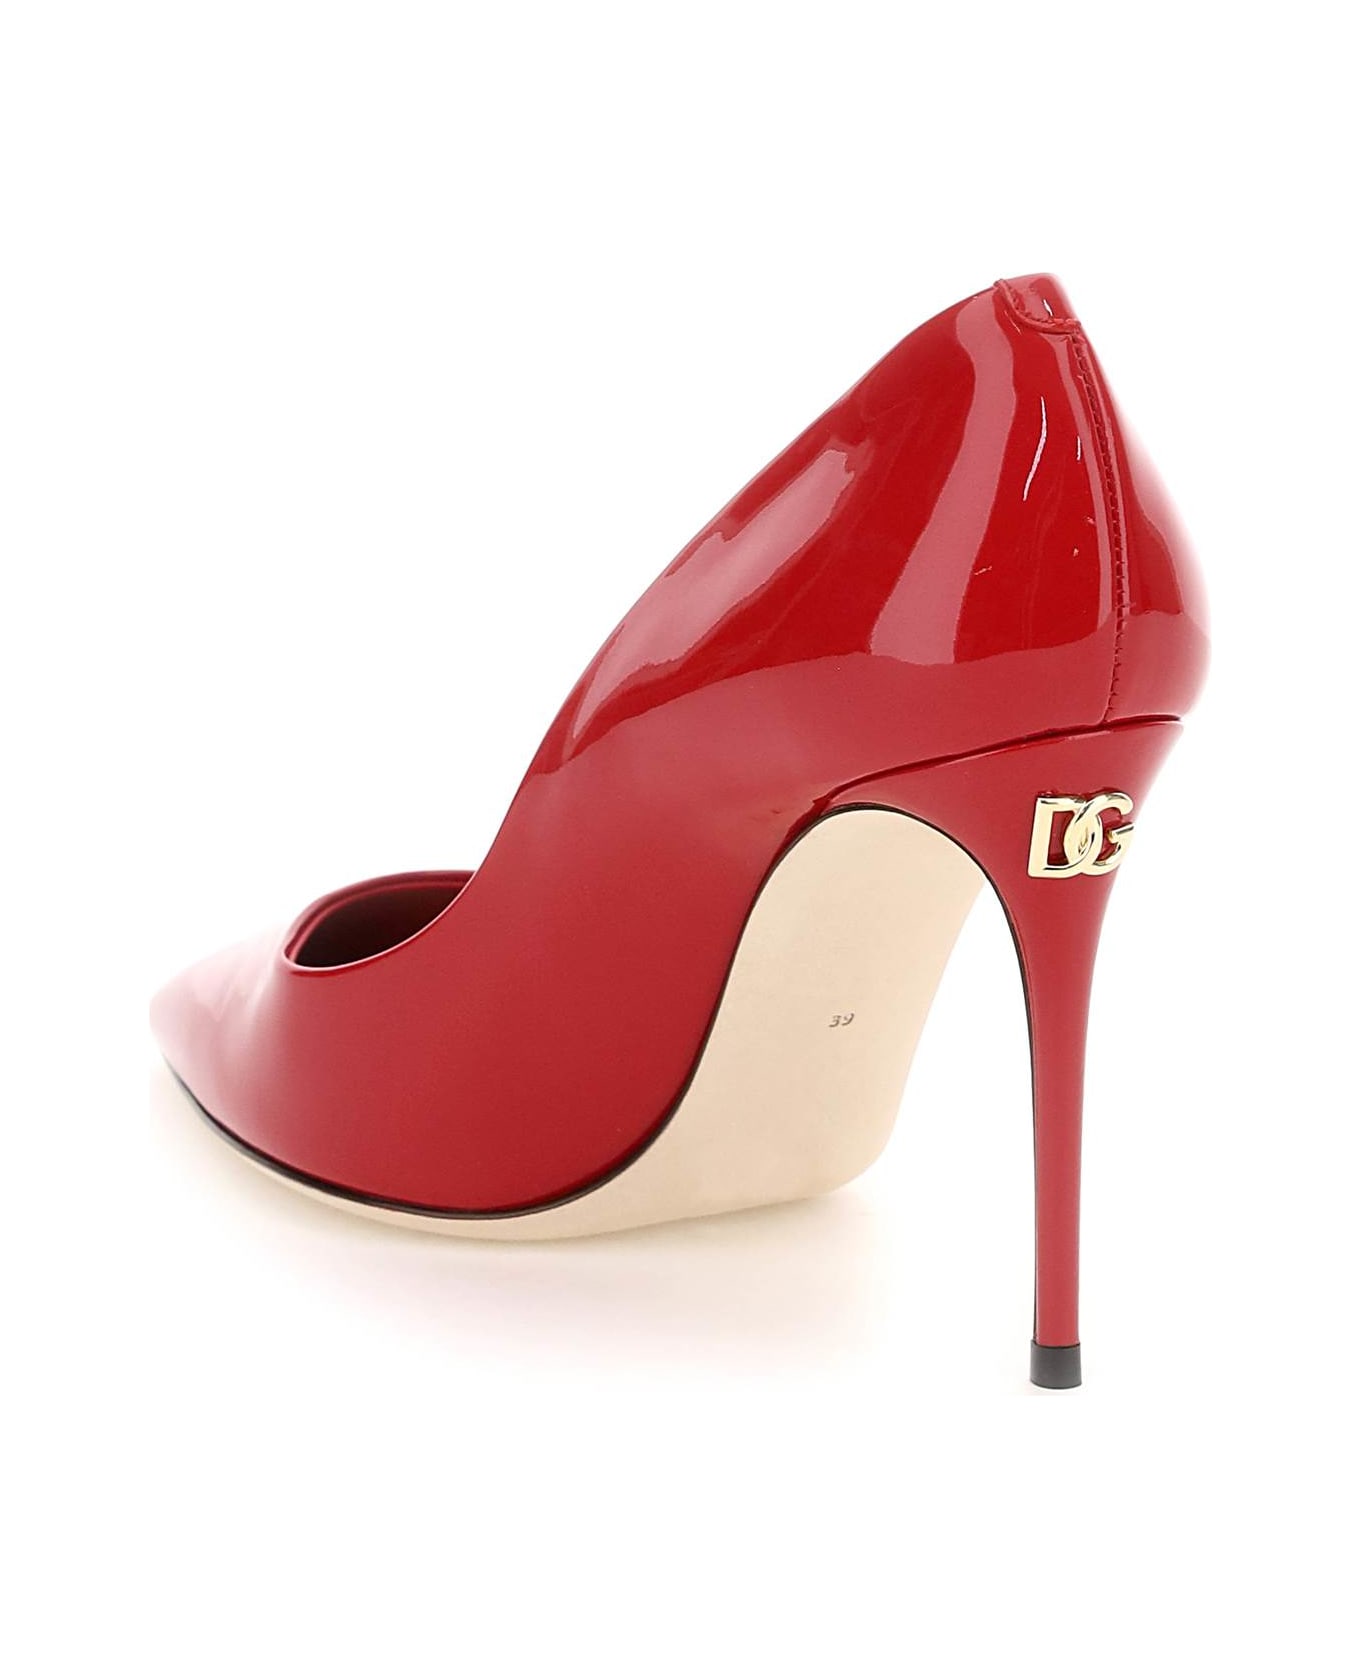 Dolce & Gabbana High-heeled Shoe - Red